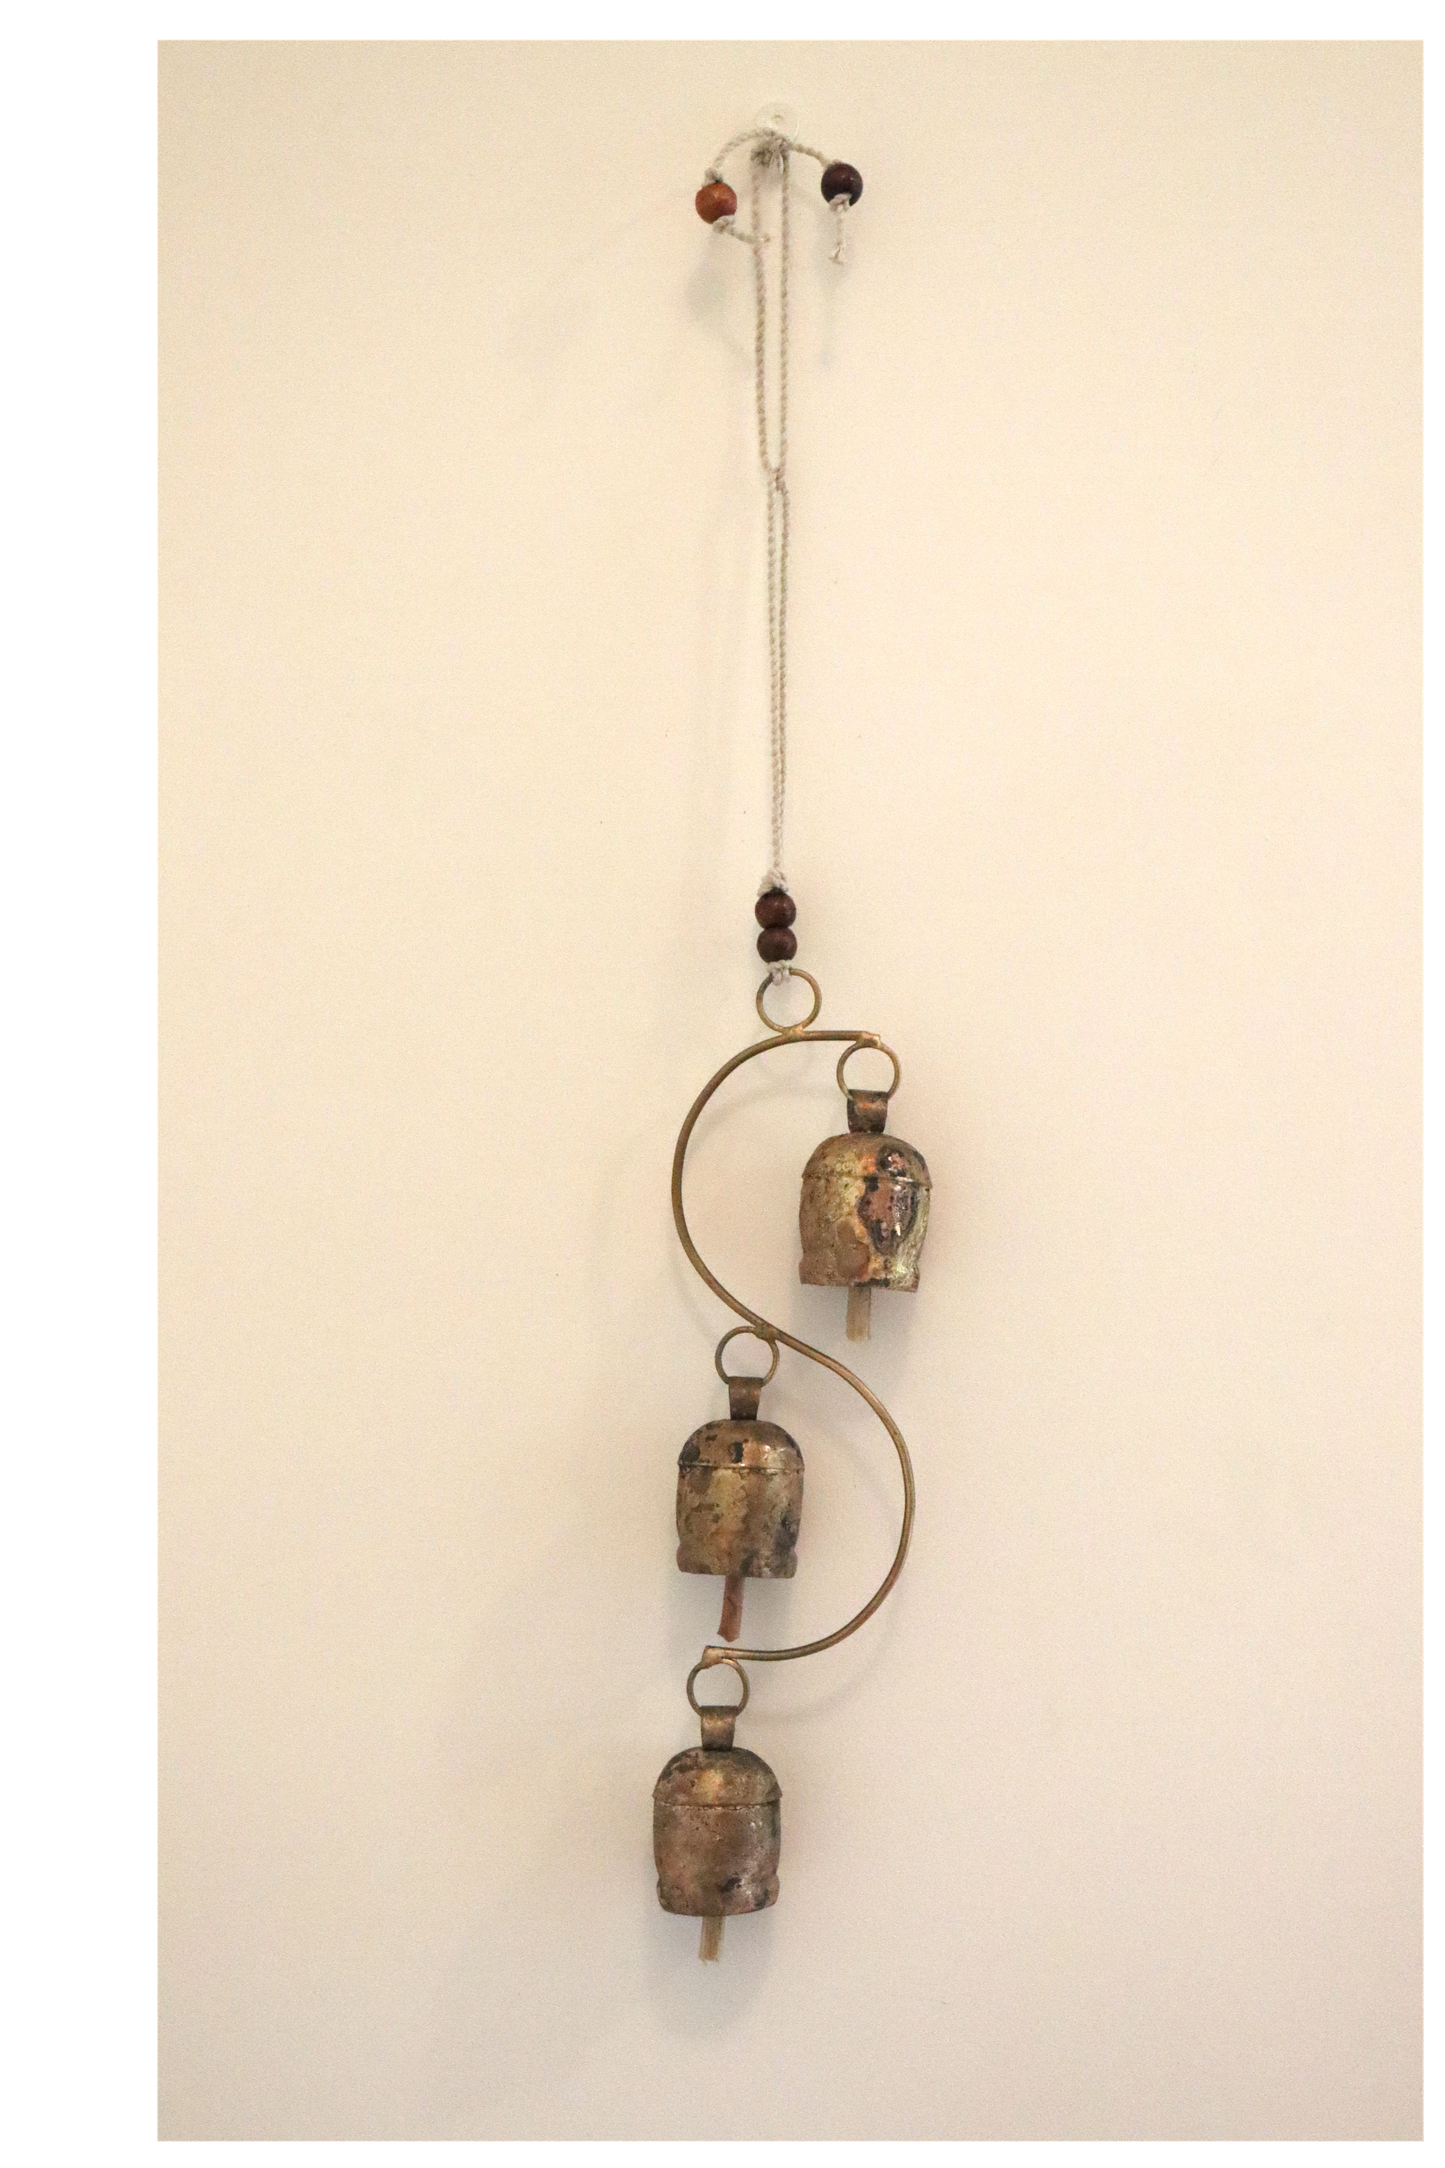 Set of 3 Rustic Decorative Hanging Bells - Adjustable String, Wood Clapper - Aksa Home Decor 